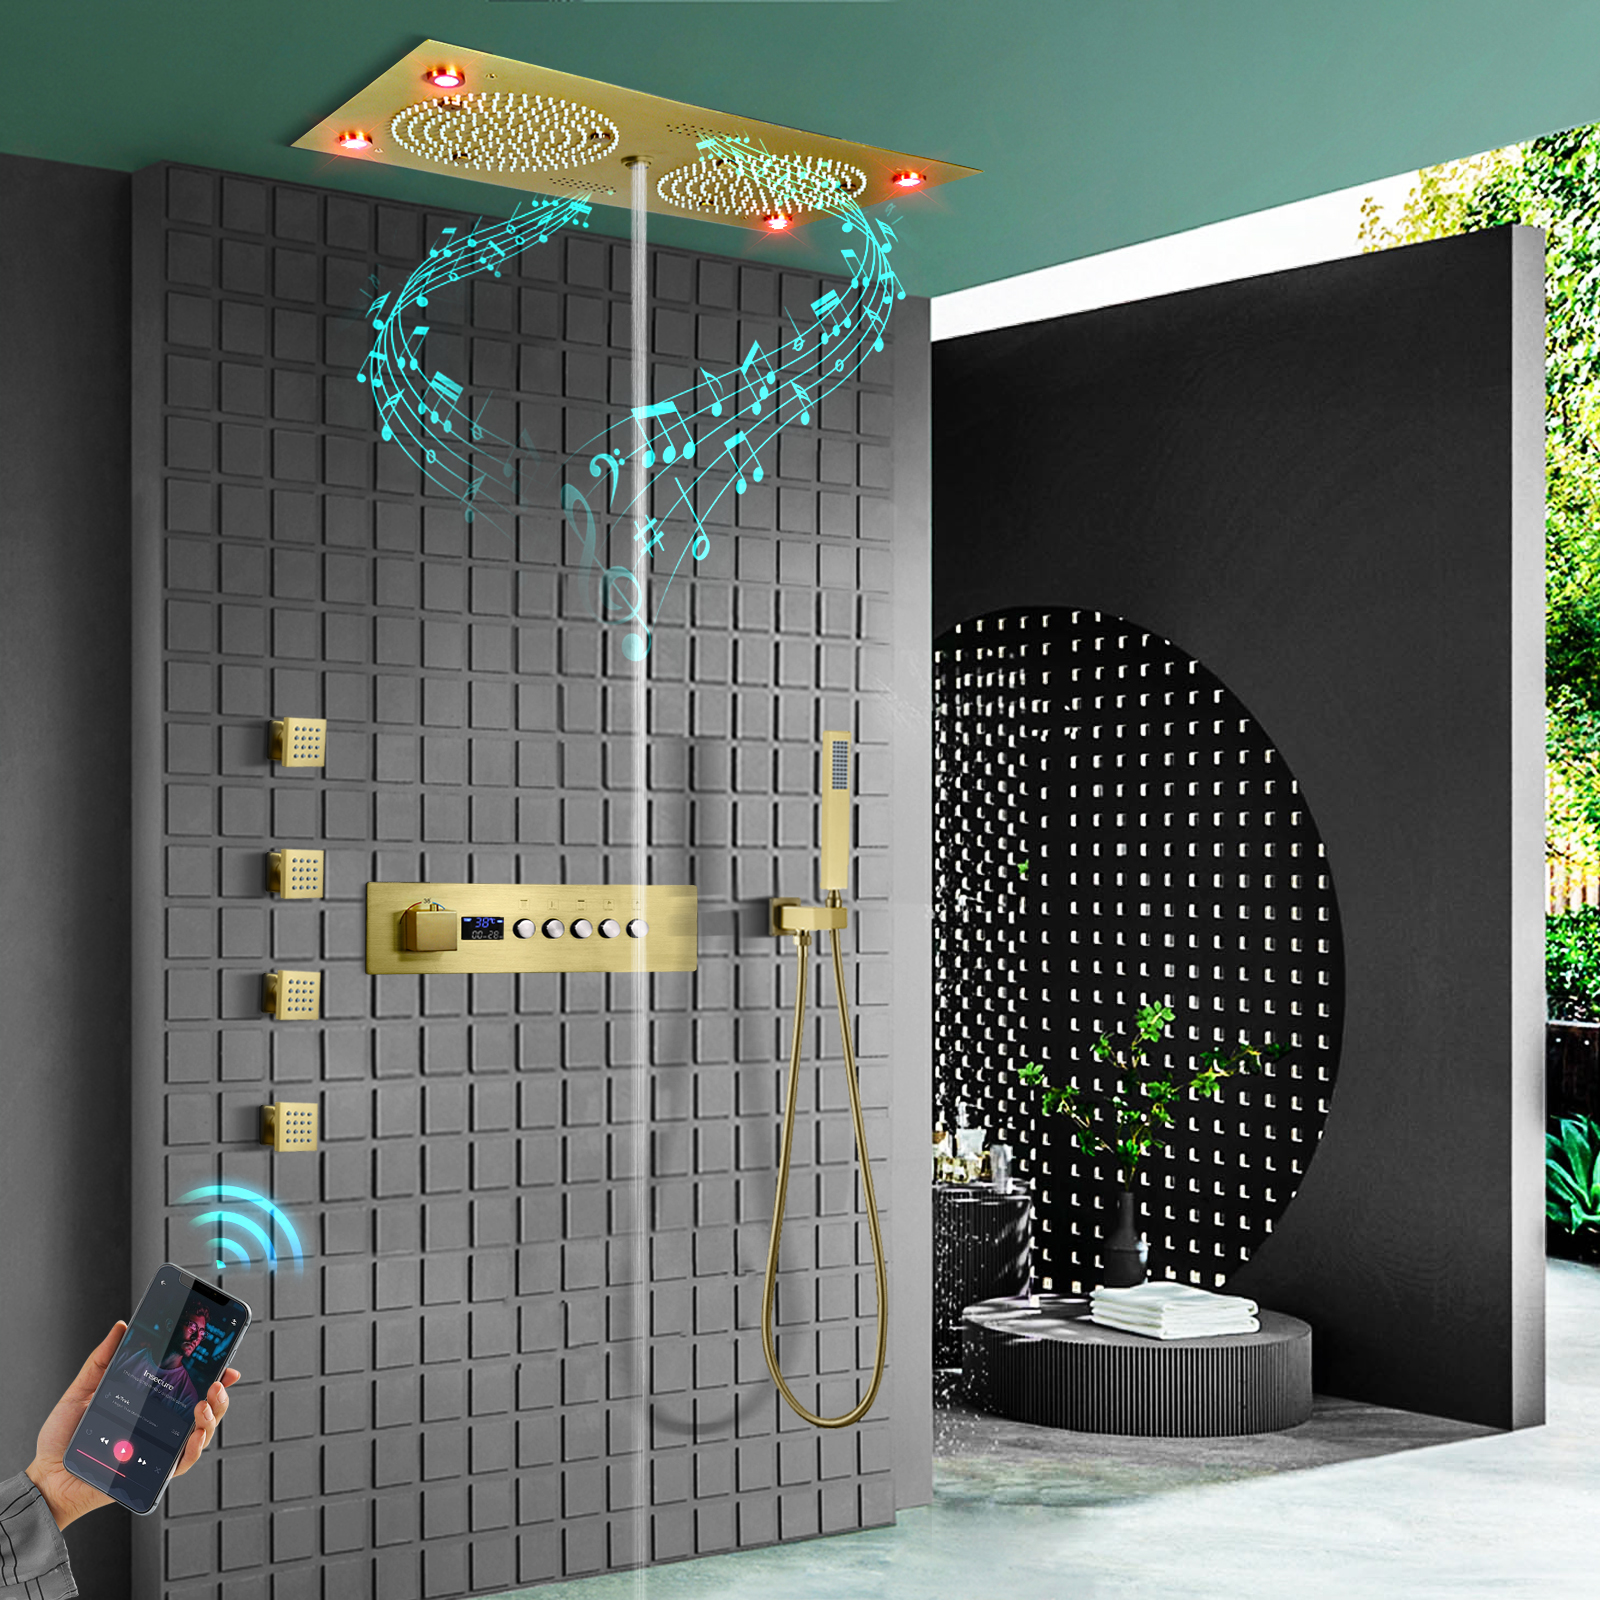 24.5x12.5 Polegada ouro escovado led música sistema de chuveiro conjunto banheiro chuveiro altura temperatura água dragão massagem cabeça injeção